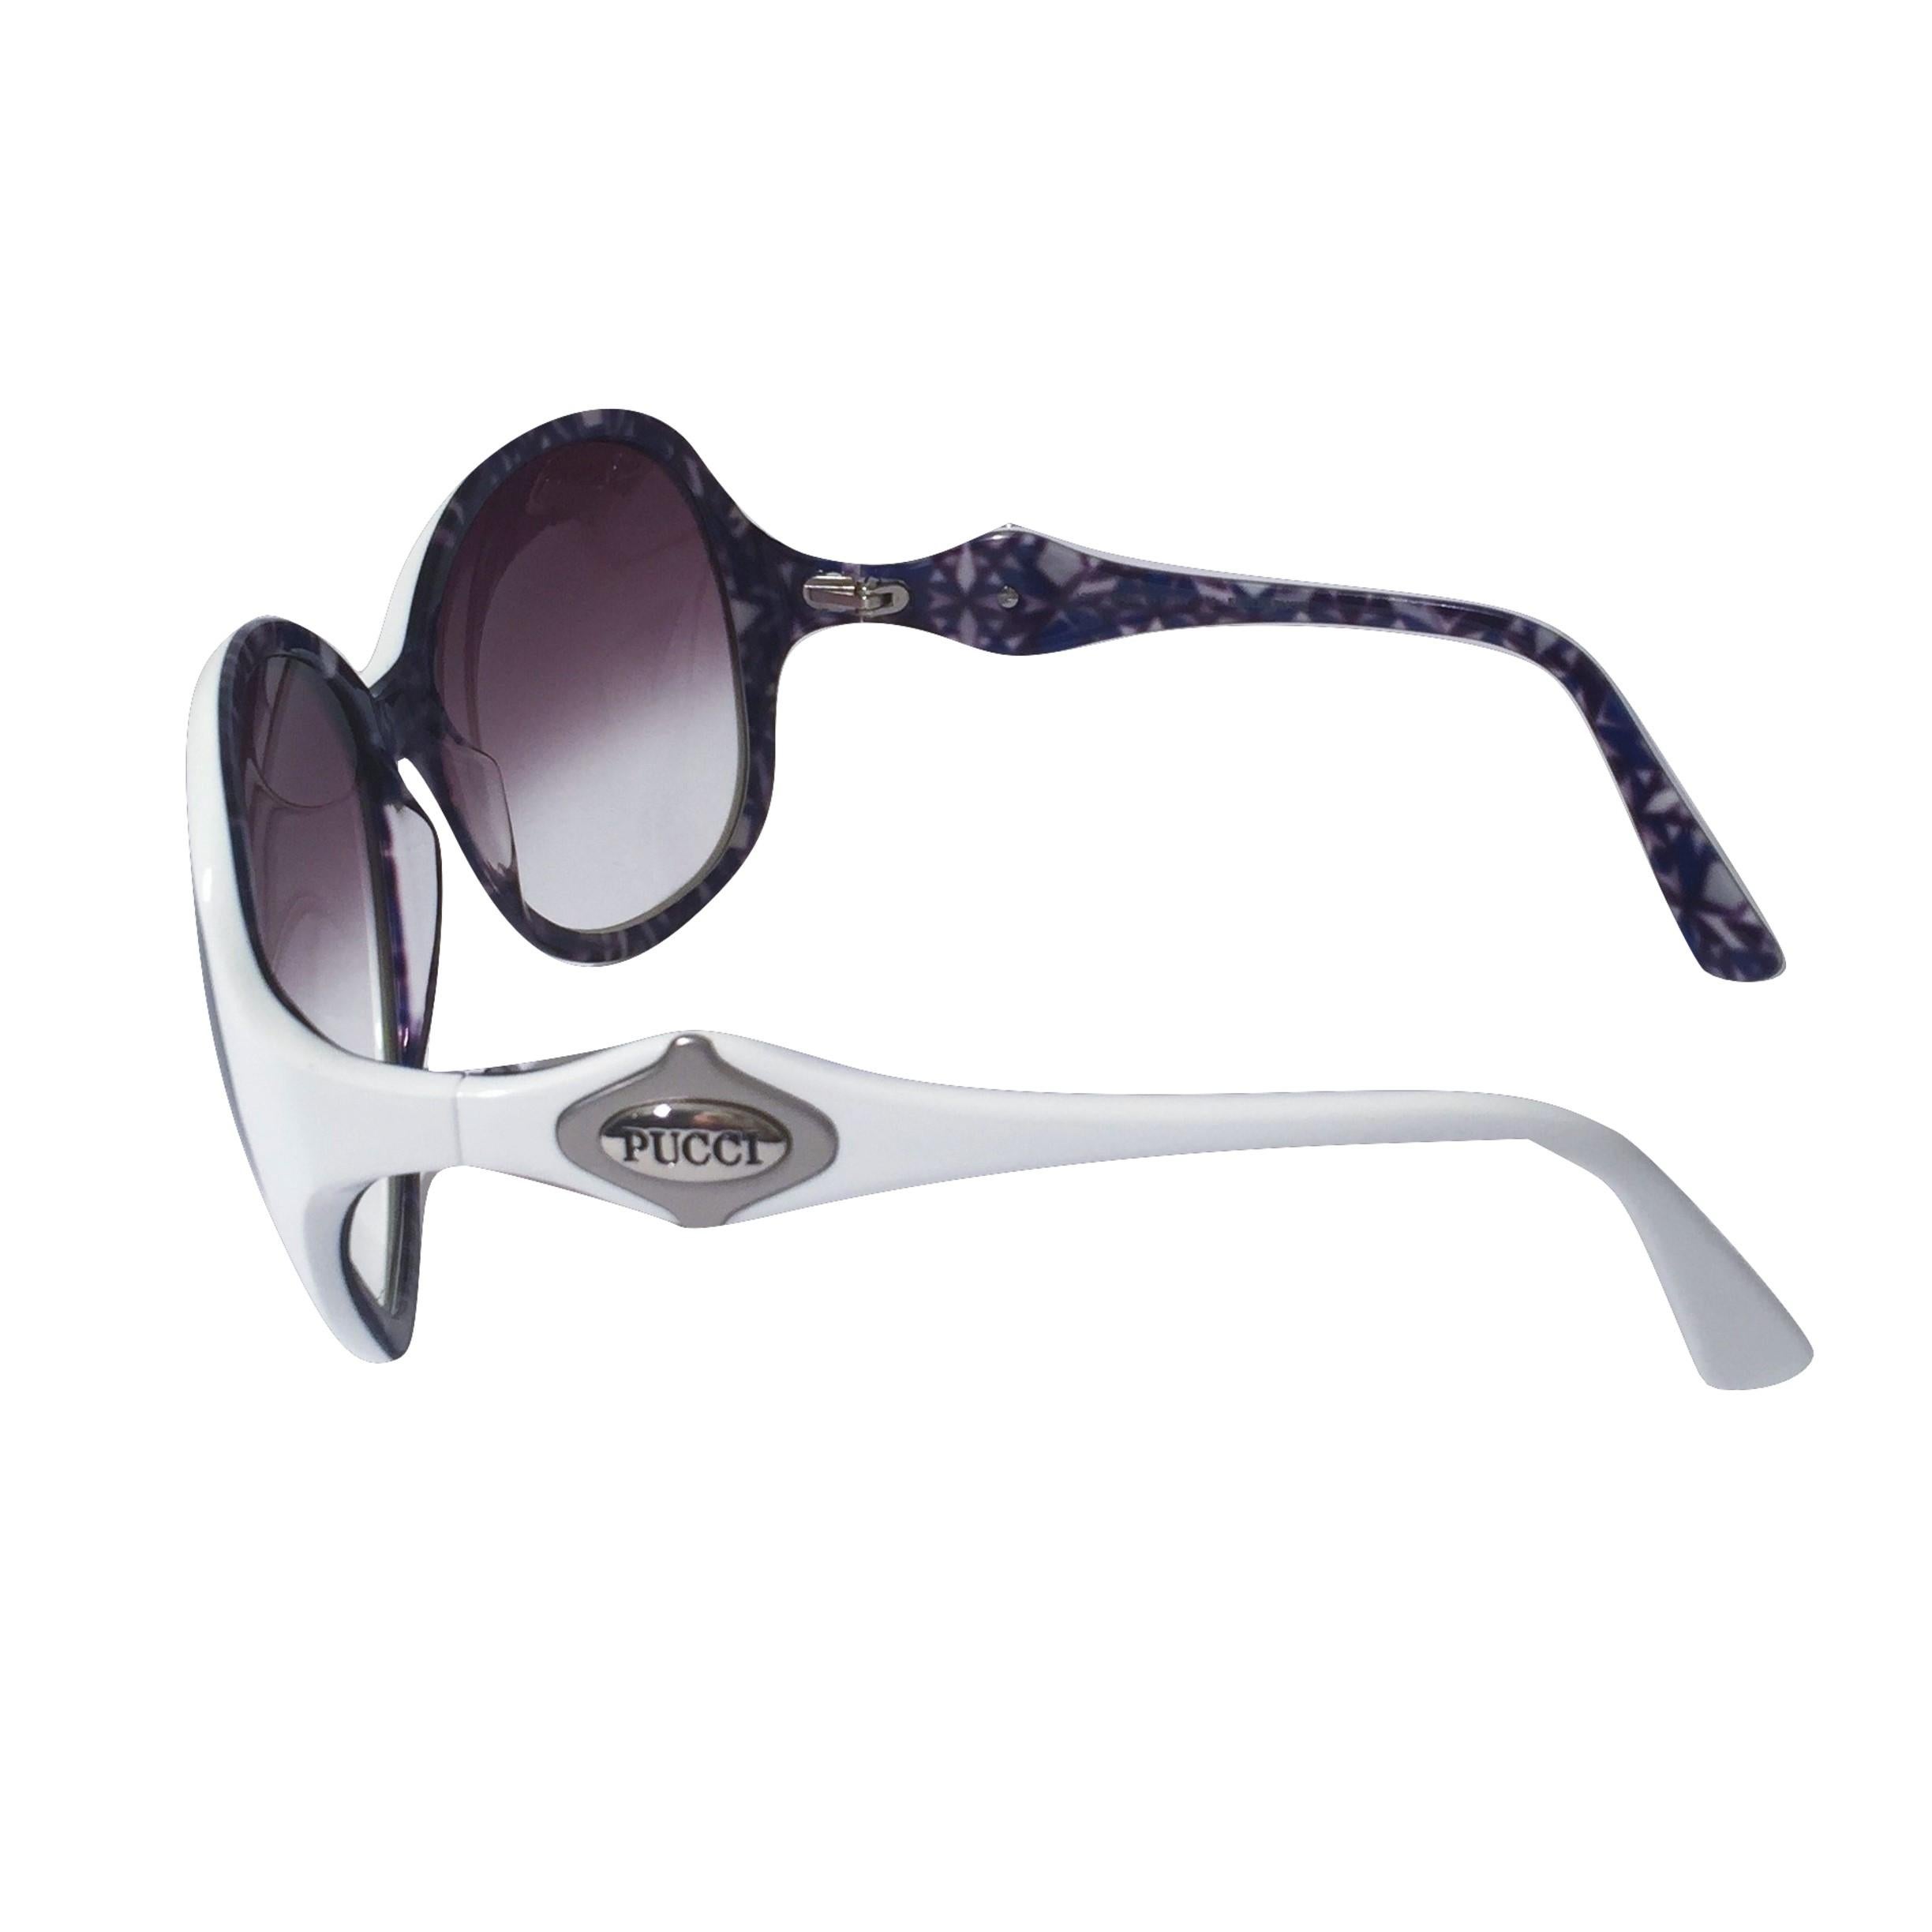 Gray New Emilio Pucci White Logo Sunglasses  With Case & Box